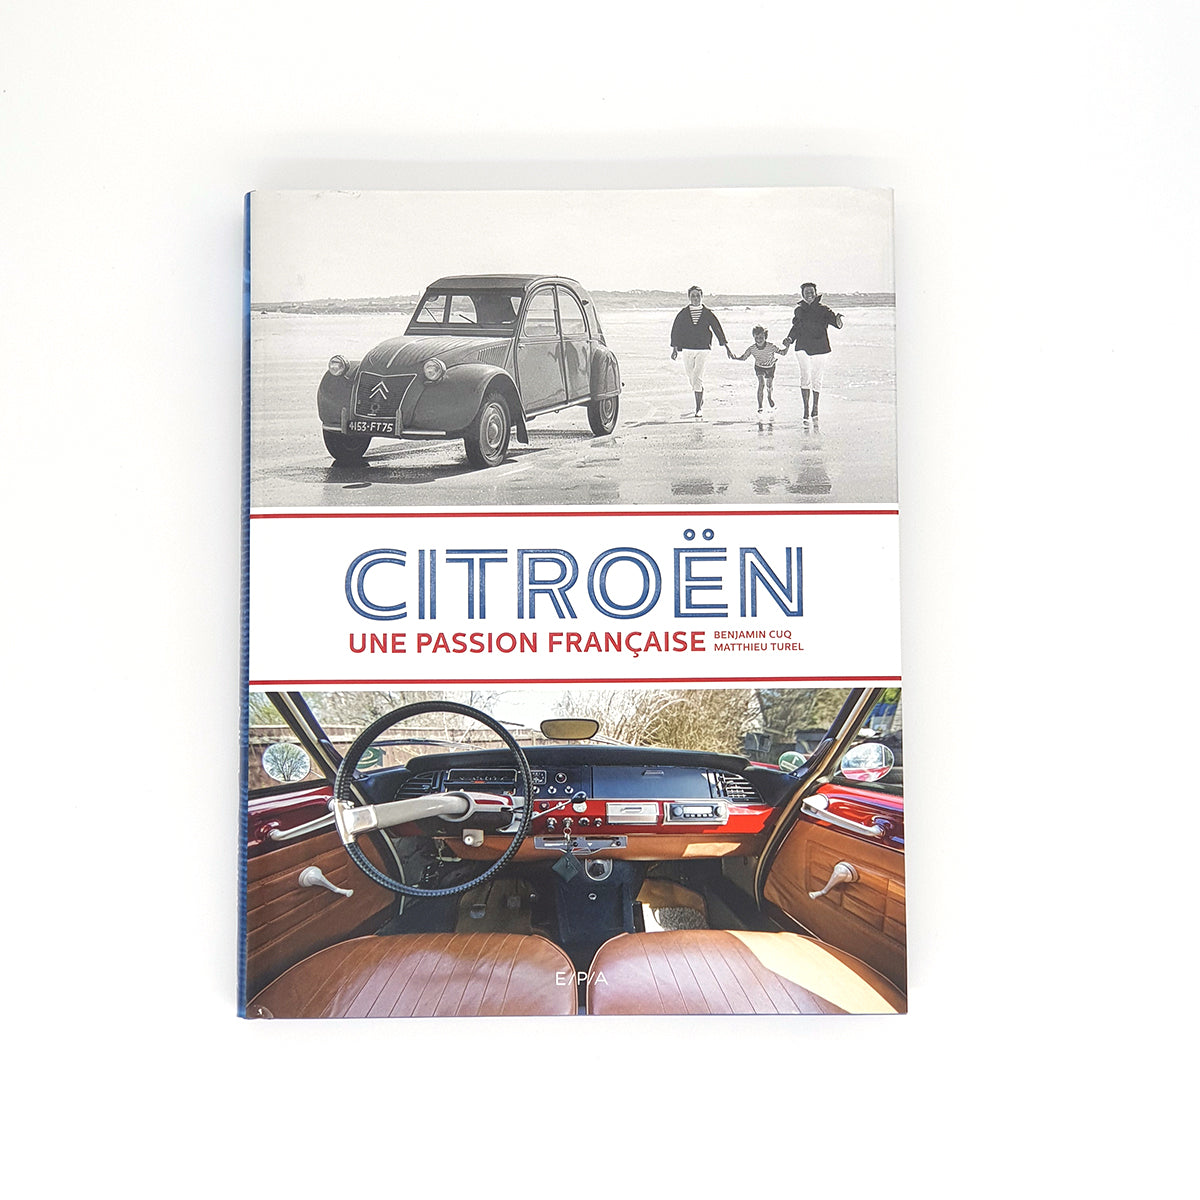 Citroën, une passion Francaise